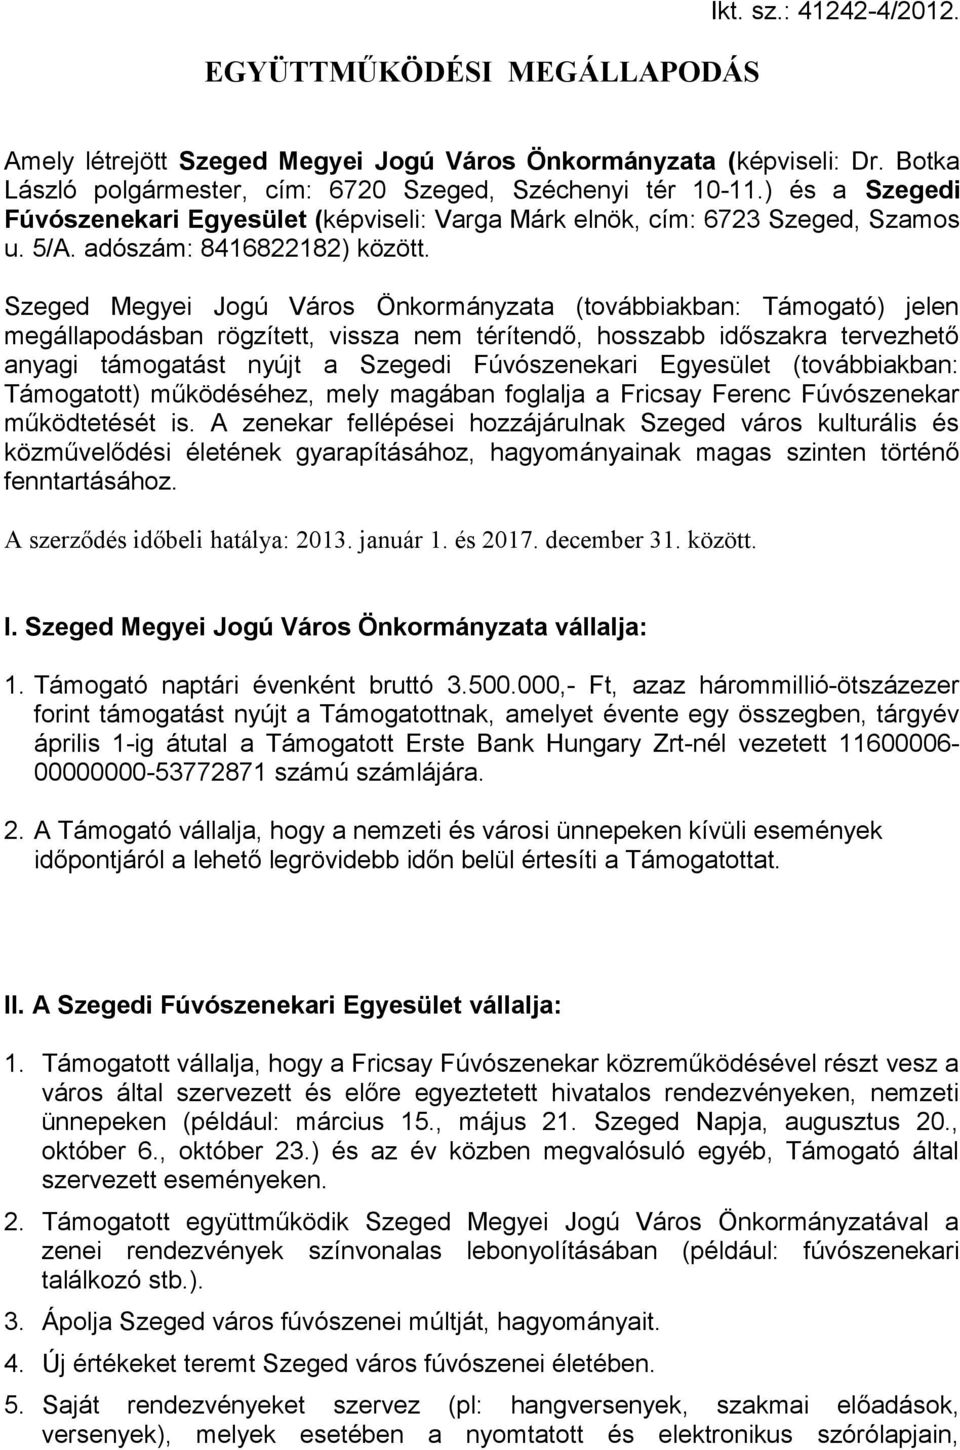 Szeged Megyei Jogú Város Önkormányzata (továbbiakban: Támogató) jelen megállapodásban rögzített, vissza nem térítendő, hosszabb időszakra tervezhető anyagi támogatást nyújt a Szegedi Fúvószenekari